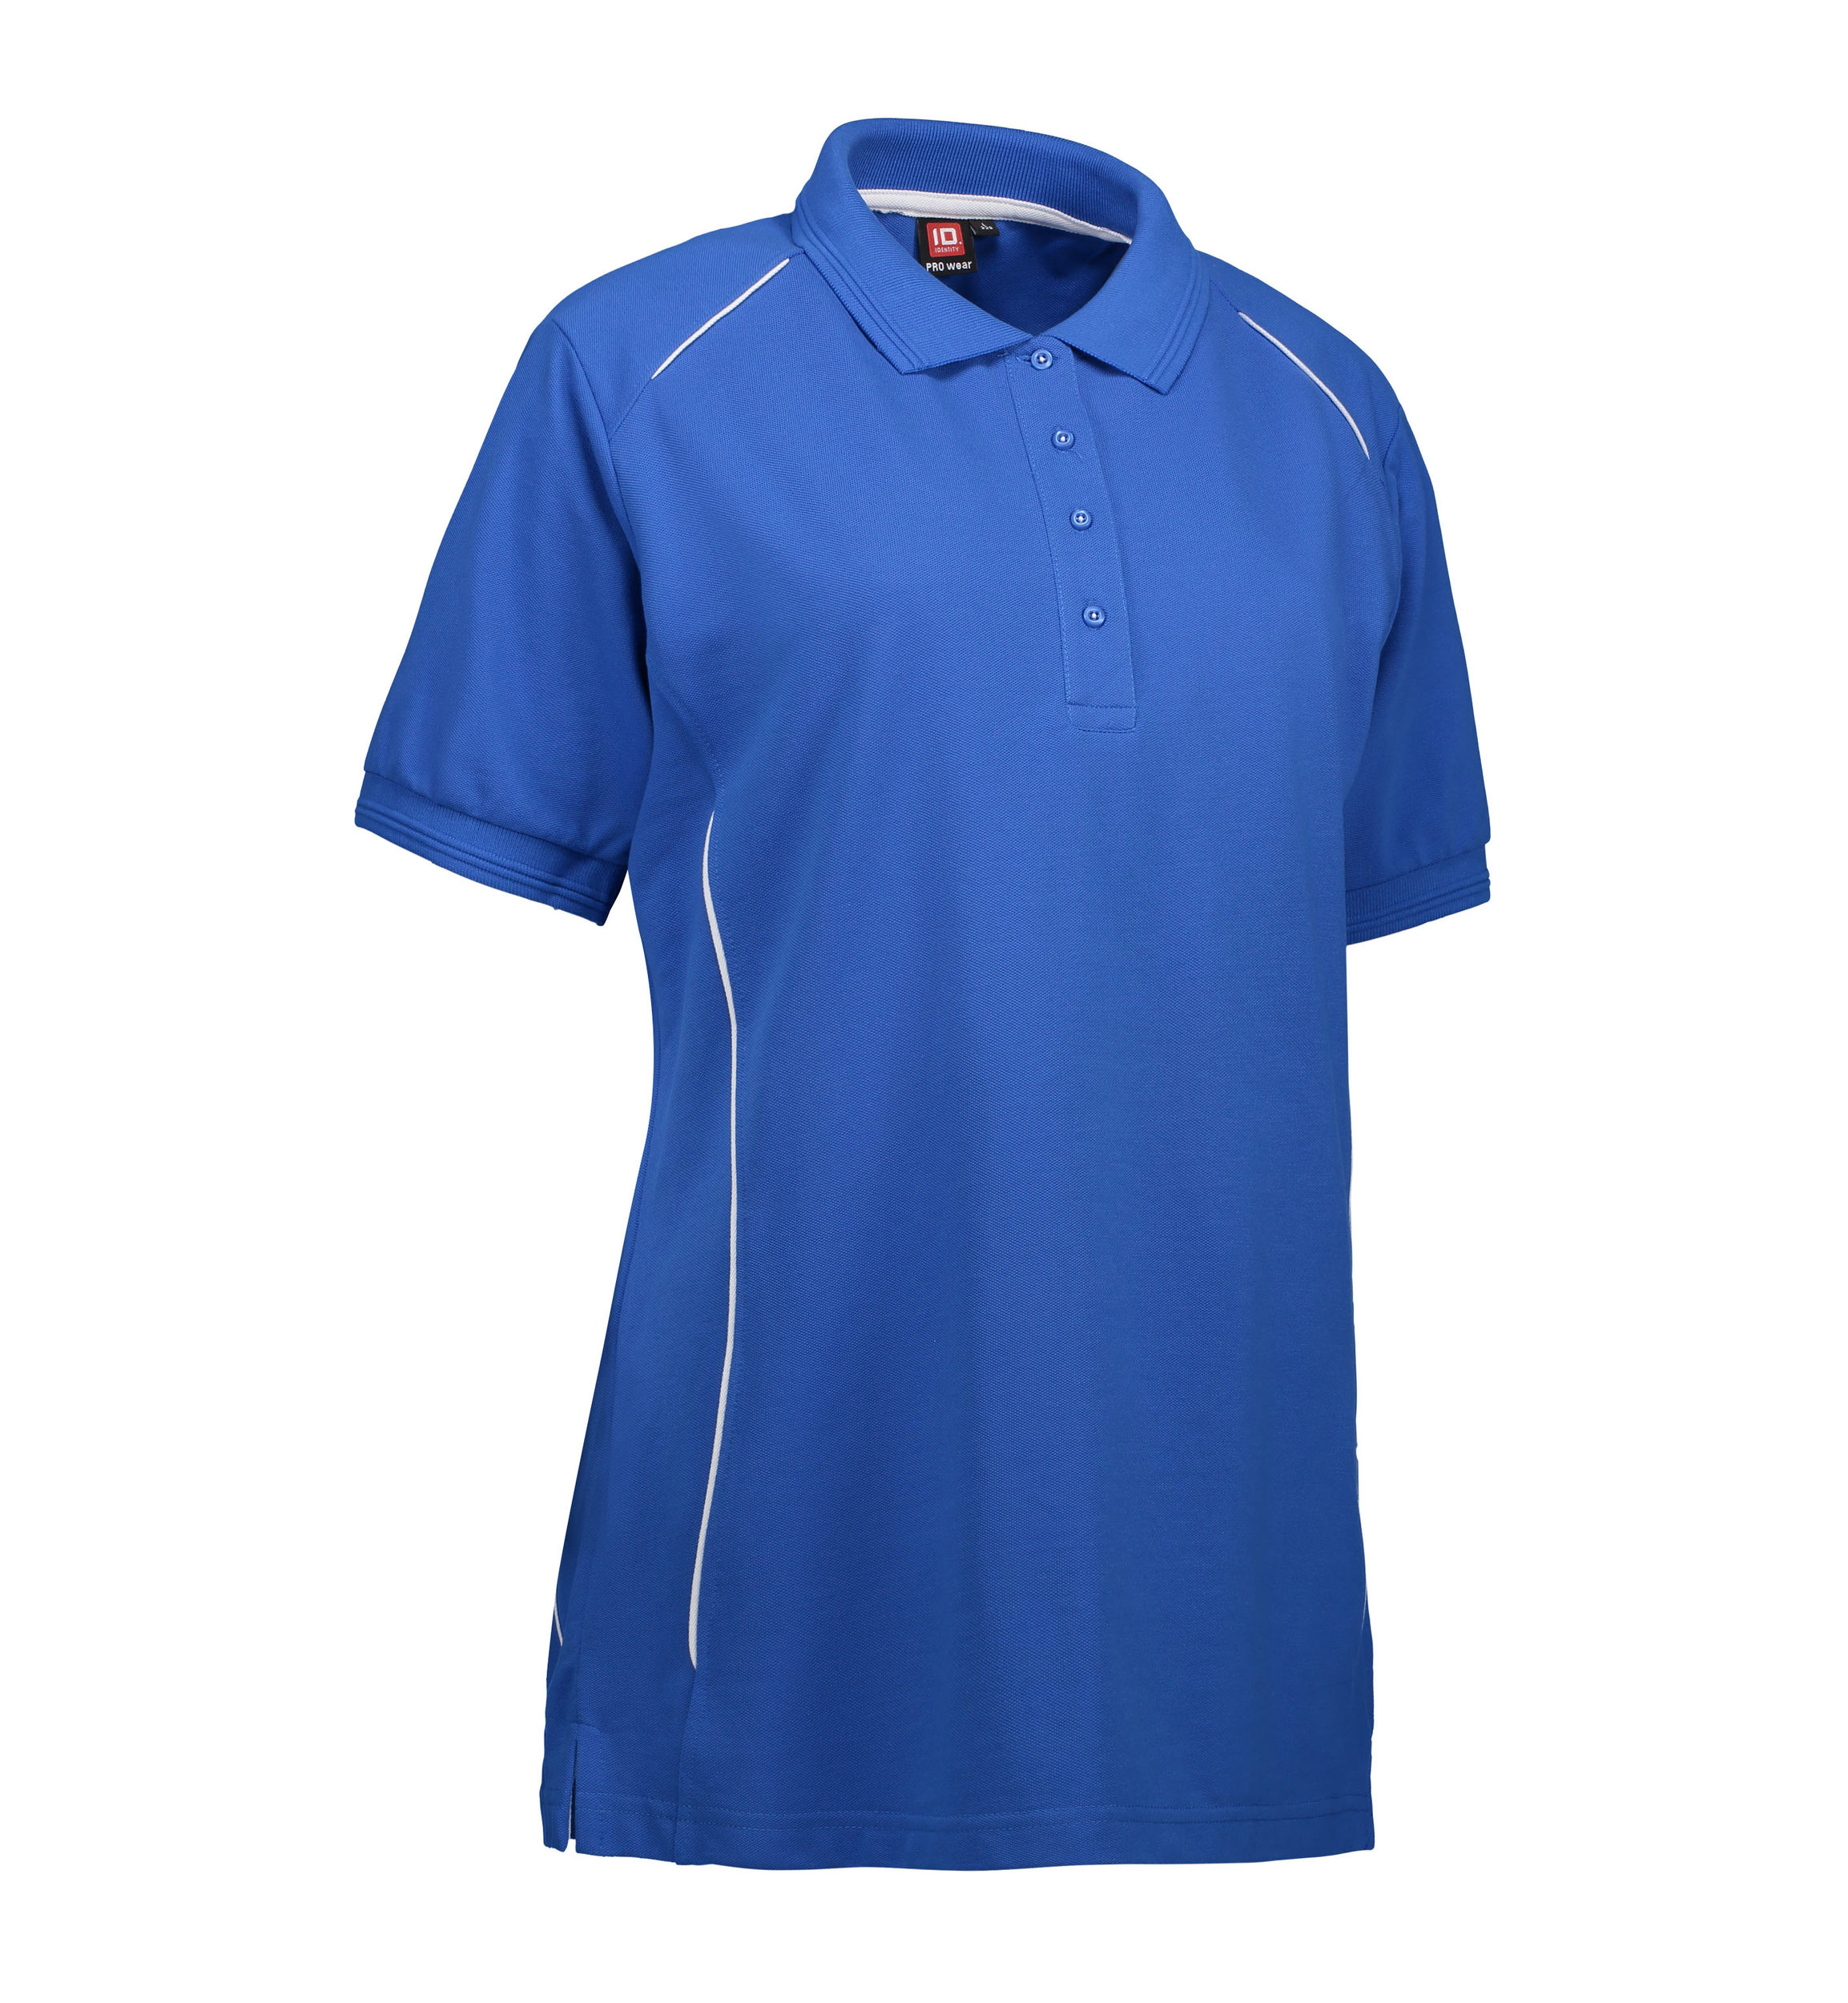 Se Slidstærk polo t-shirt i blå til damer - 6XL hos Sygeplejebutikken.dk